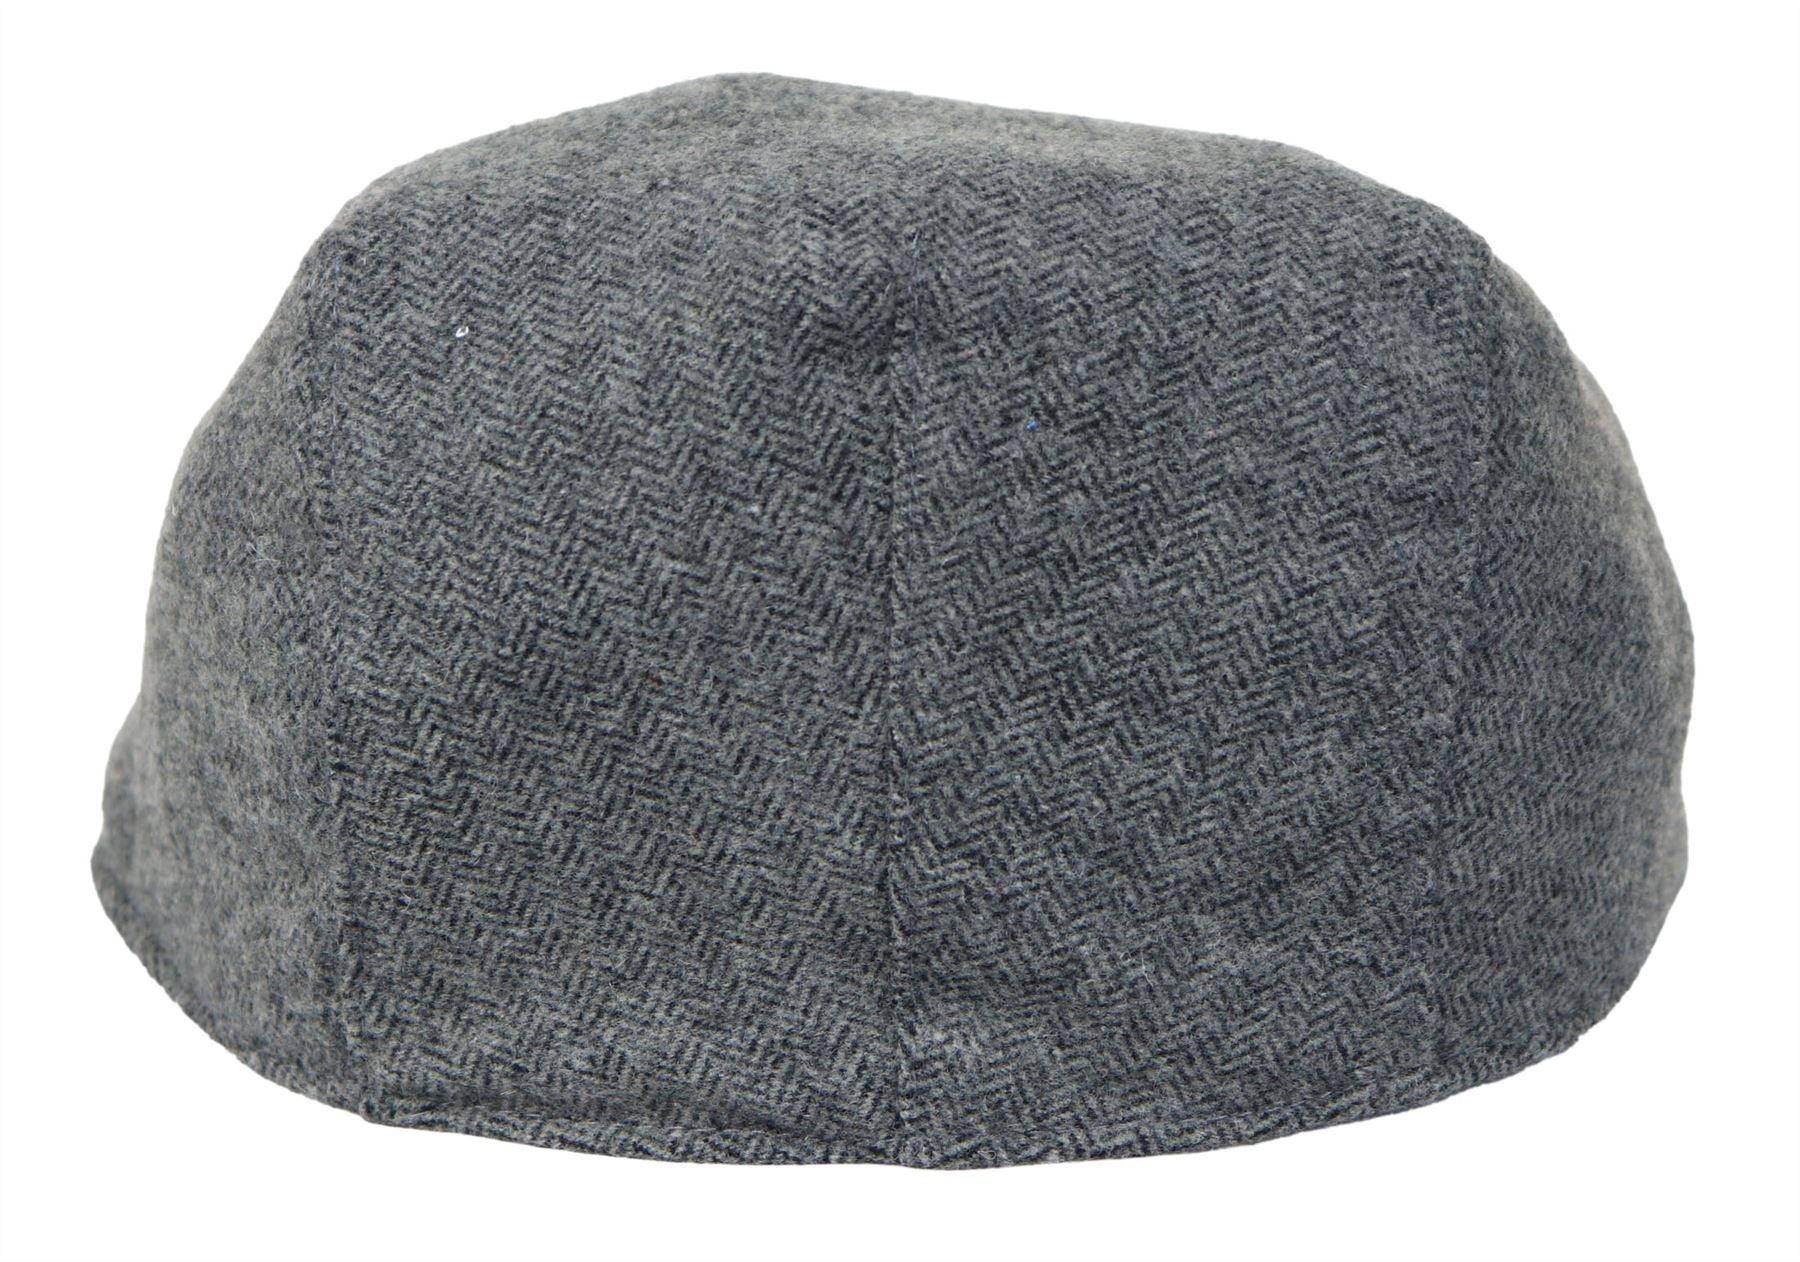 Mens Flatcap Hat Baker Boy 8 Panel Grandad Tweed Herringbone Brown Grey Vintage-TruClothing